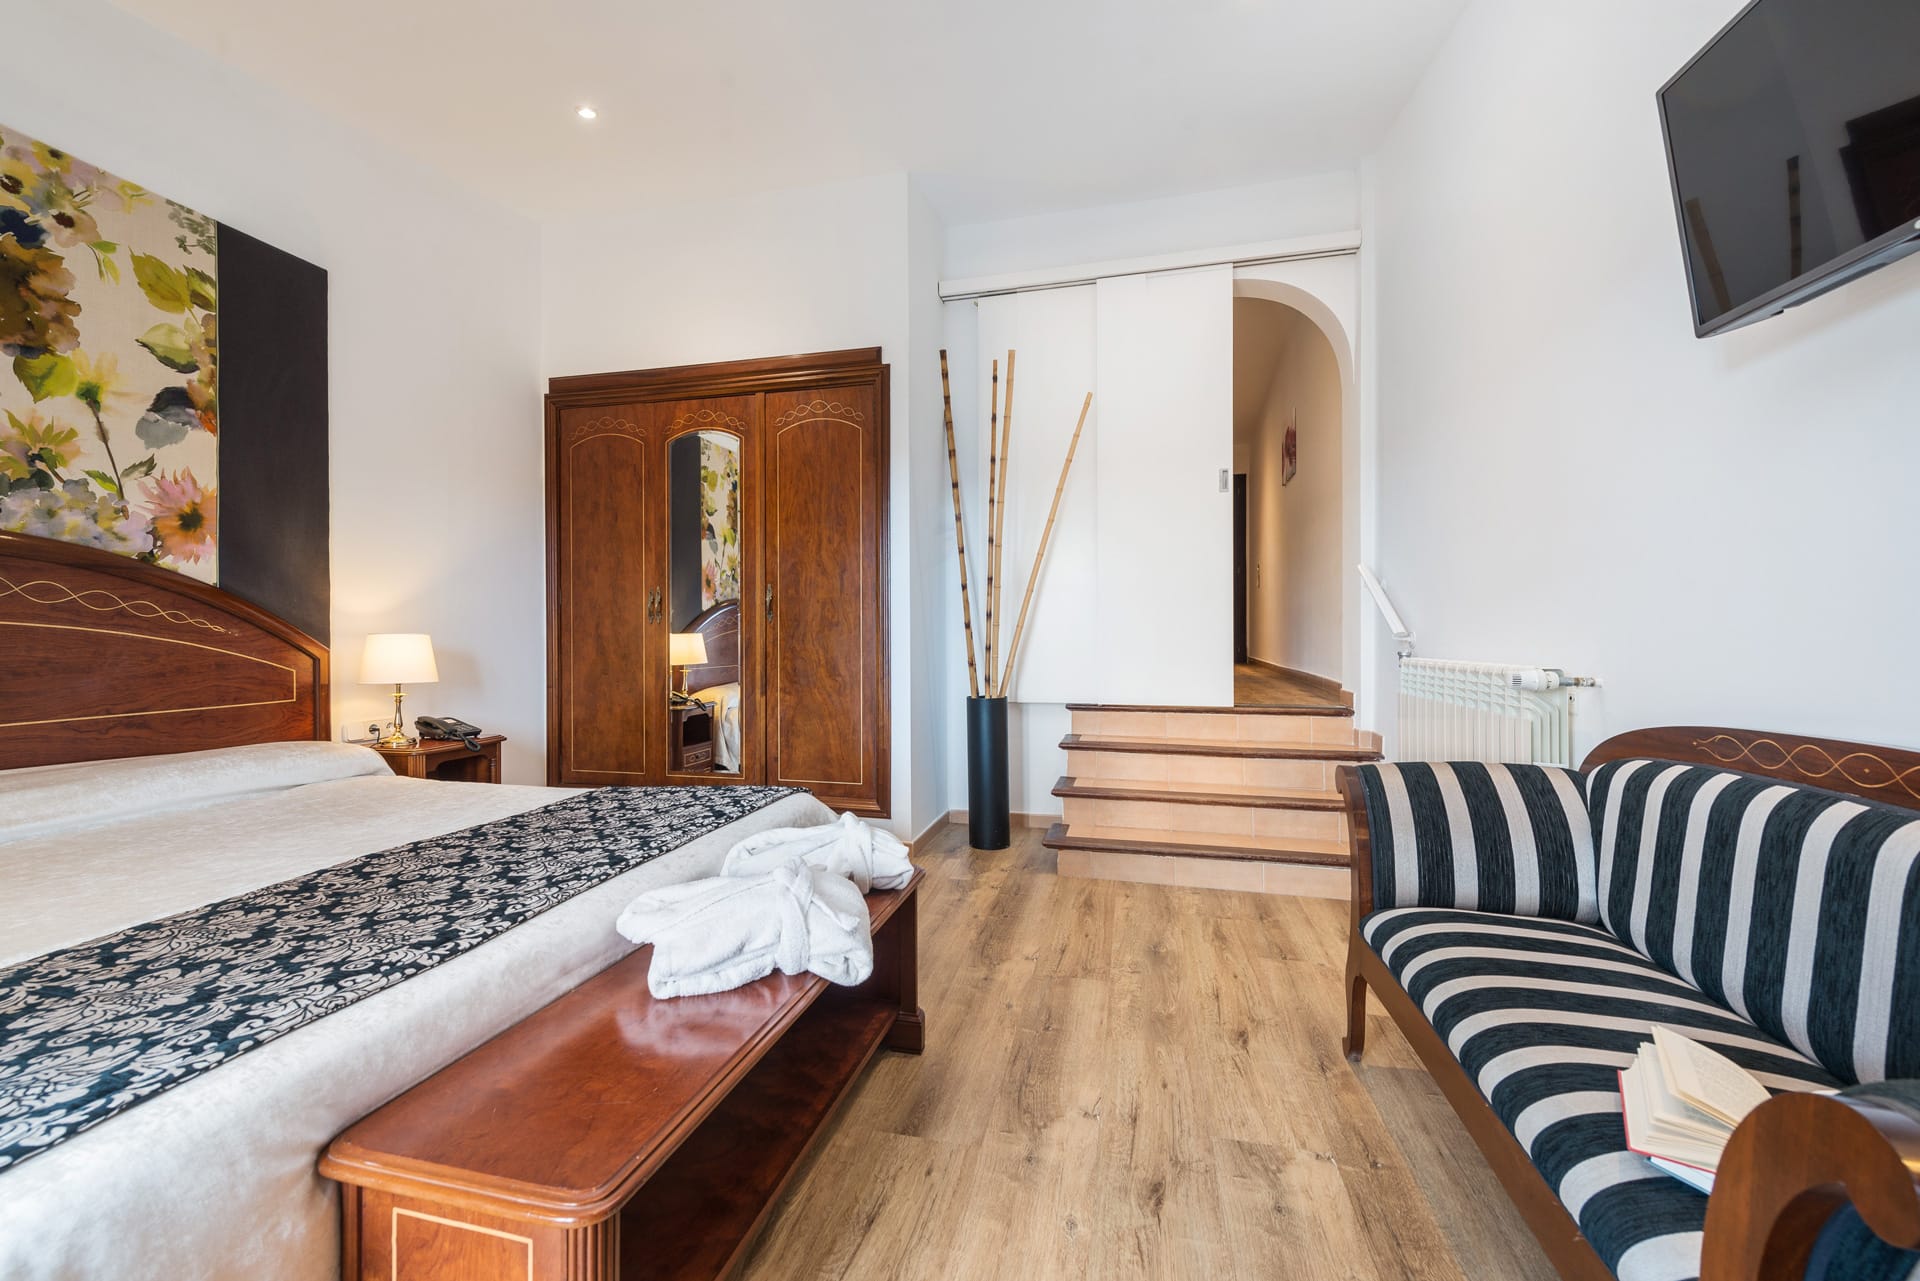 Apartament Suite - Suite APARTAMENT monnaber nou 2 - Hotel Rural Monnaber Nou Mallorca